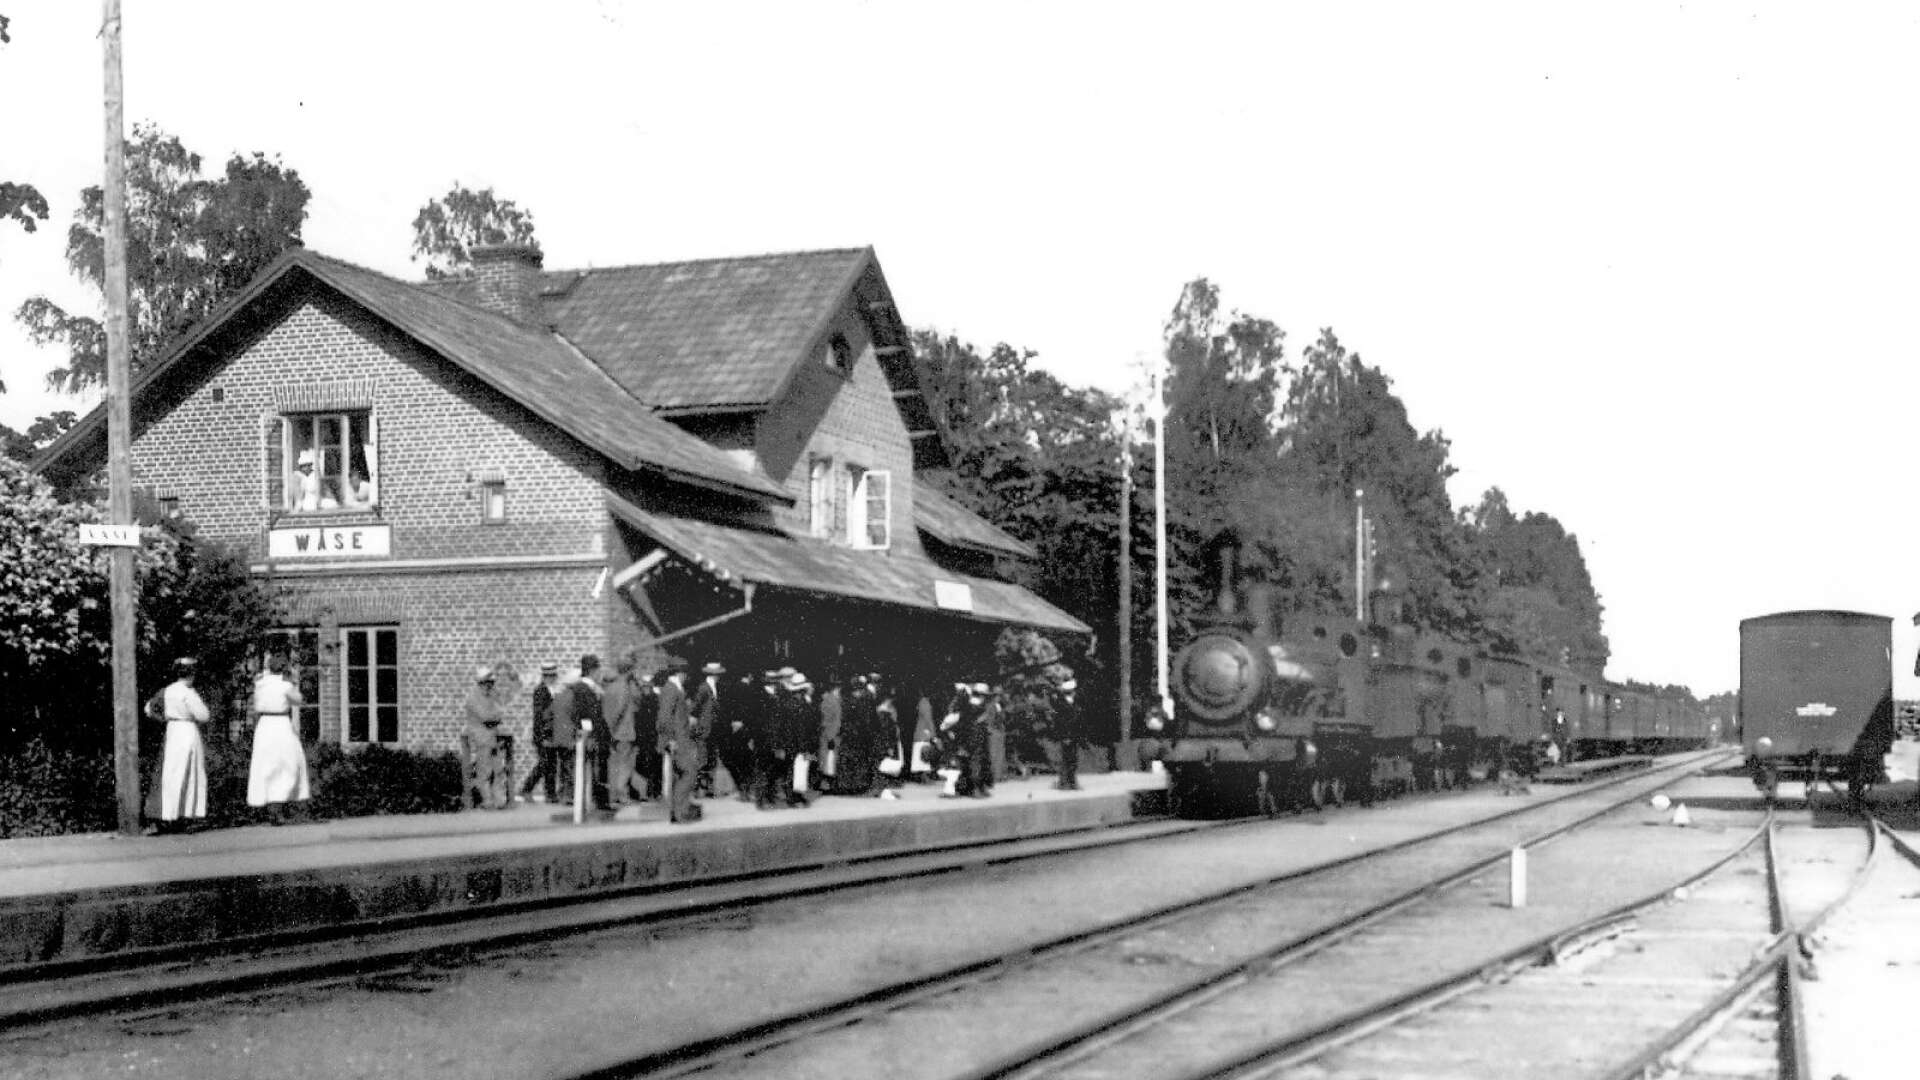 Järnvägen är klar och stationsbyggnaden på plats. Bilden är antagligen tagen i början av 1900-talet. Observera stavningen på stationsnamnet Wäse och att det finns en elstolpe i närheten.